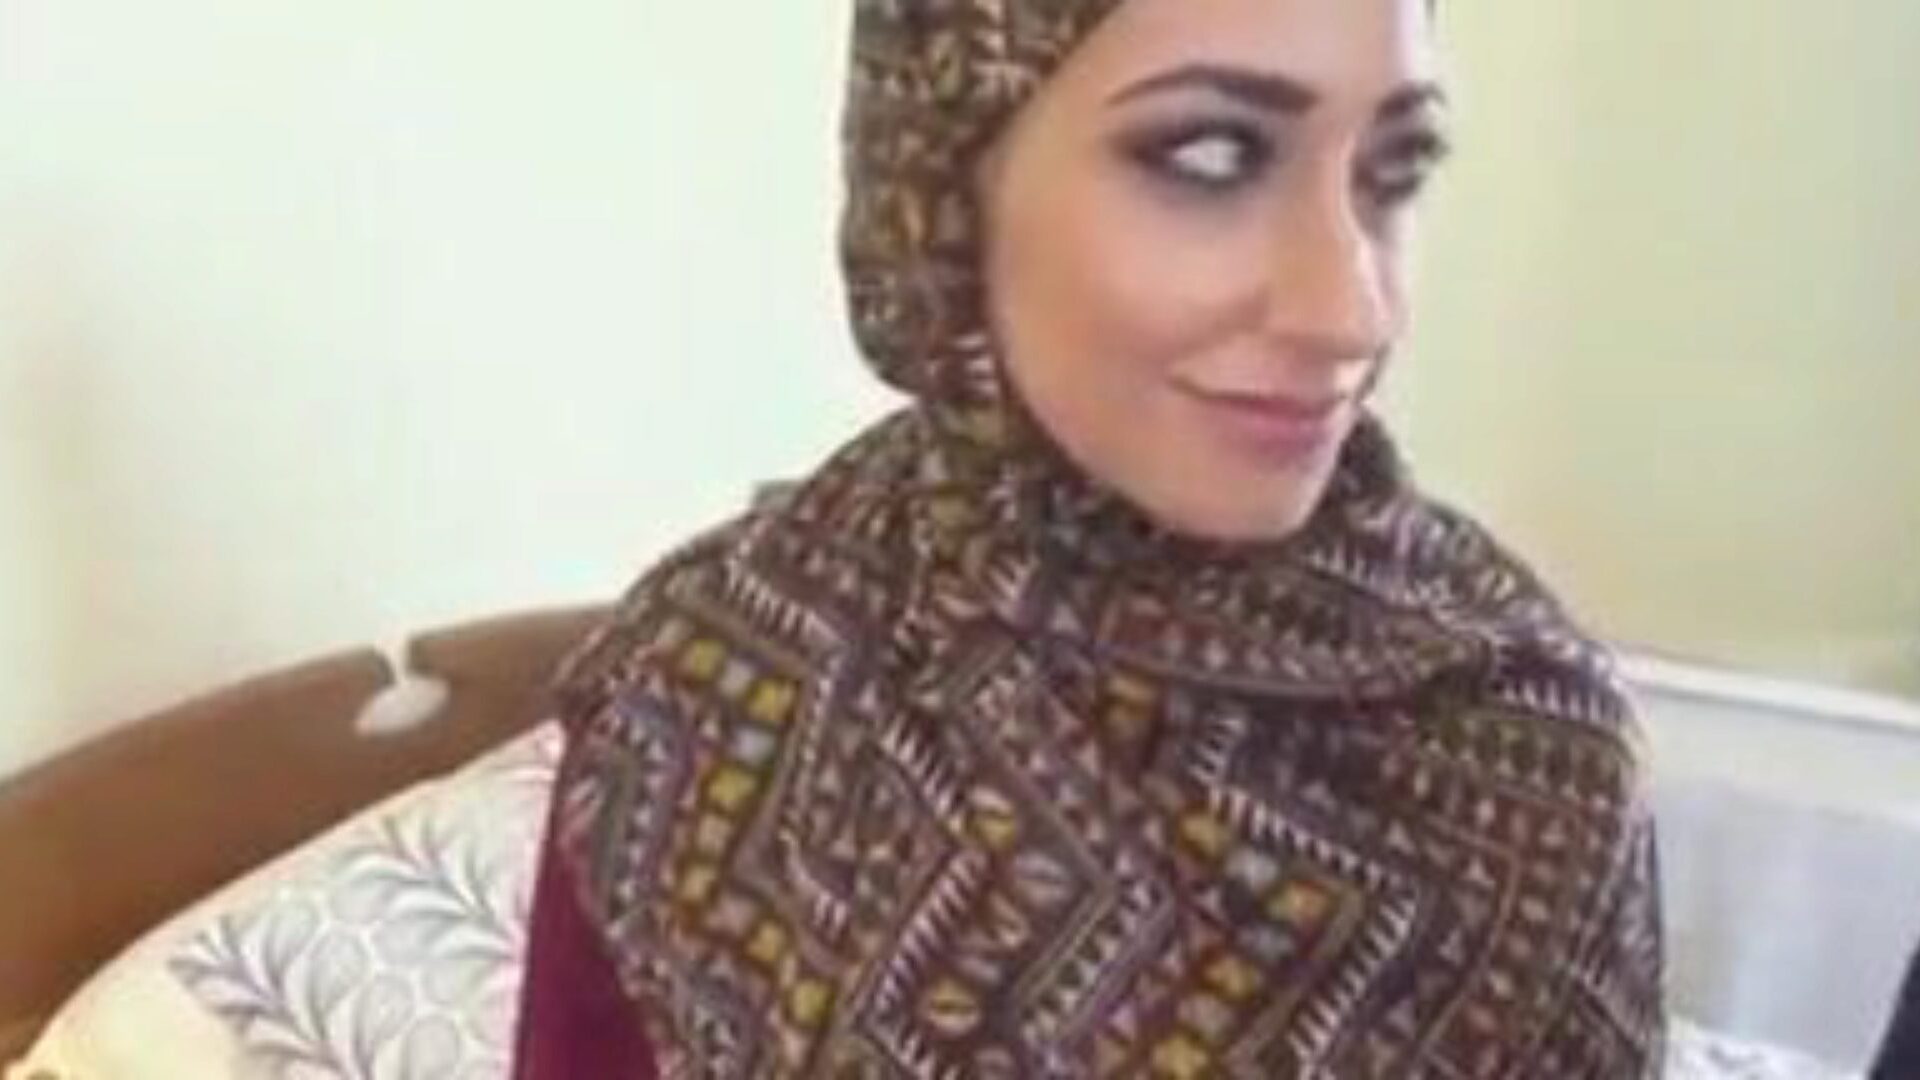 moslim hijab meisje neuken, gratis moslim tube porno video cd bekijk moslim hijab meisje neuken filmscène op xhamster, de grootste fuck-fest tube webpagina met tonnen gratis arabische moslim tube & youtube hijab porno vids